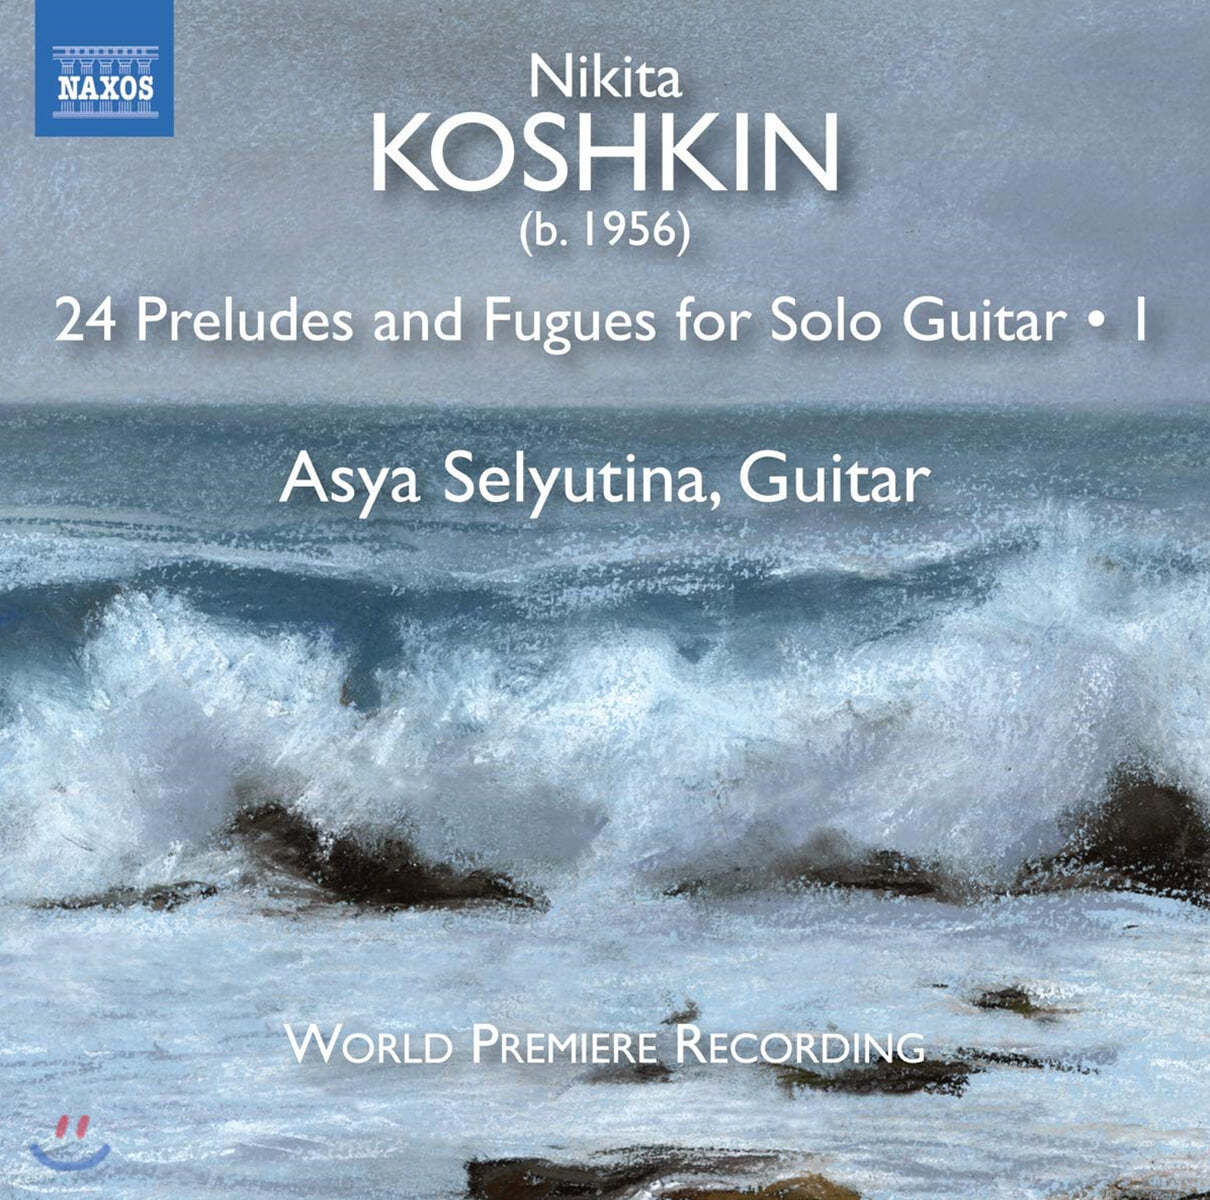 Asya Selyutina 니키타 코슈킨: 기타 독주를 위한 24개의 전주곡과 푸가 니키타 코슈킨 작품 1집